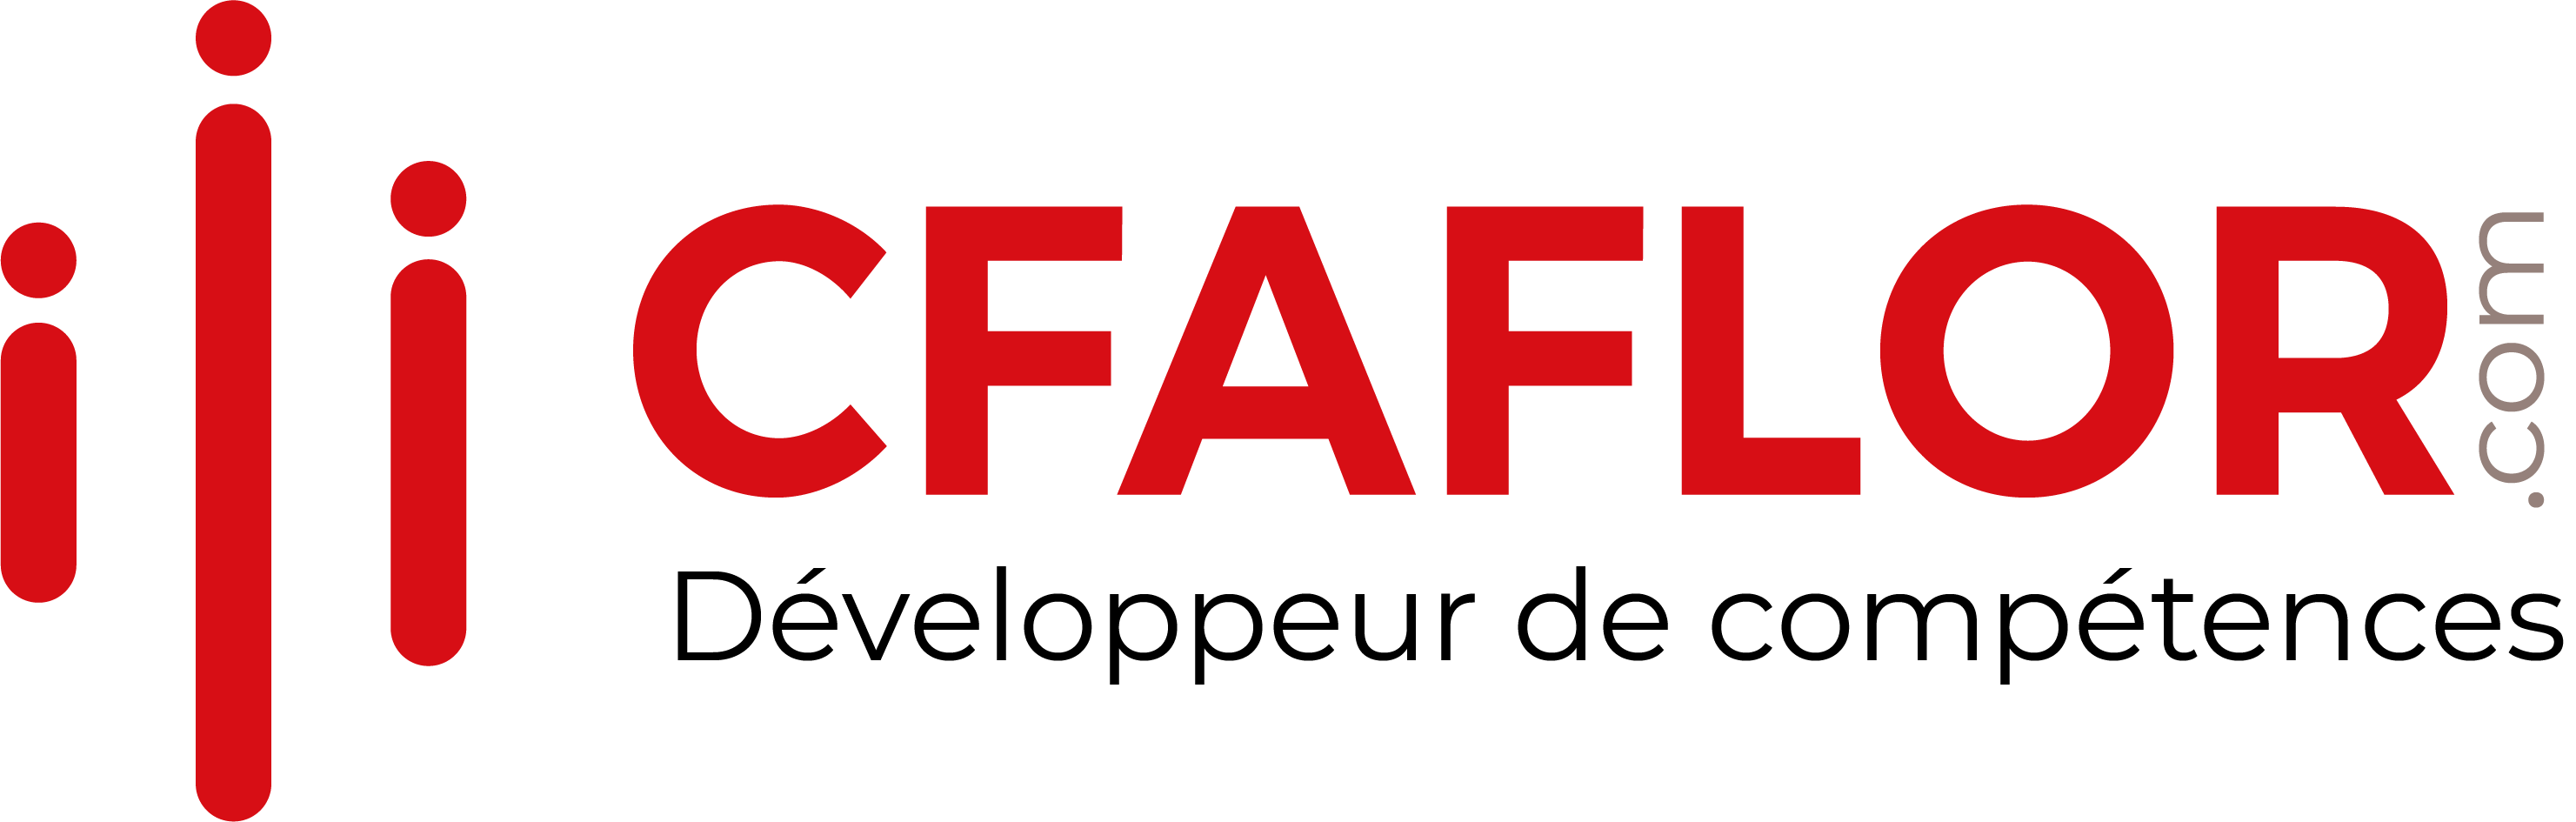 couleur__Logo-CFAFLOR-com-Développeur de compétences-long